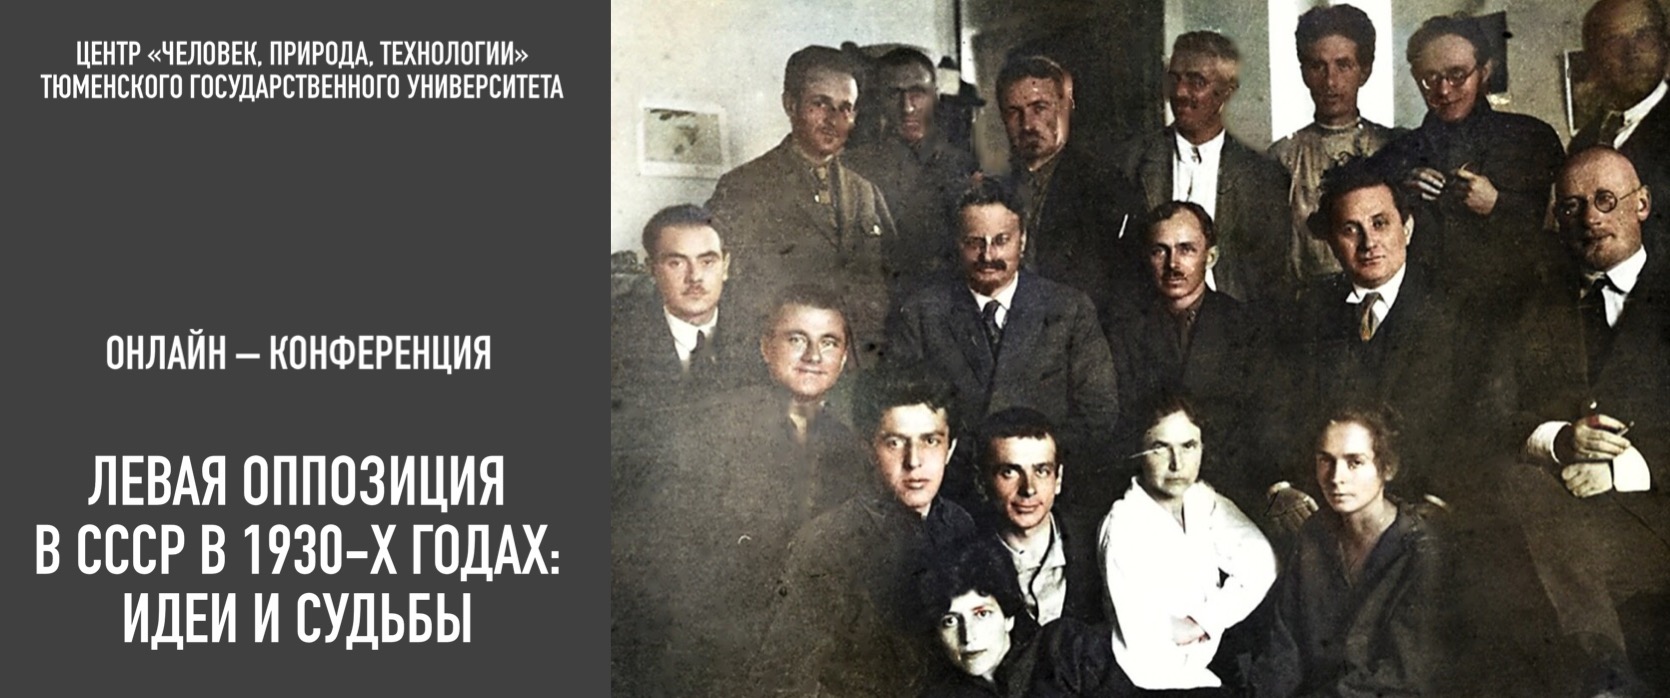 Участие в конференции "Левая оппозиция в СССР в 1930-х гг.: идеи и судьбы"